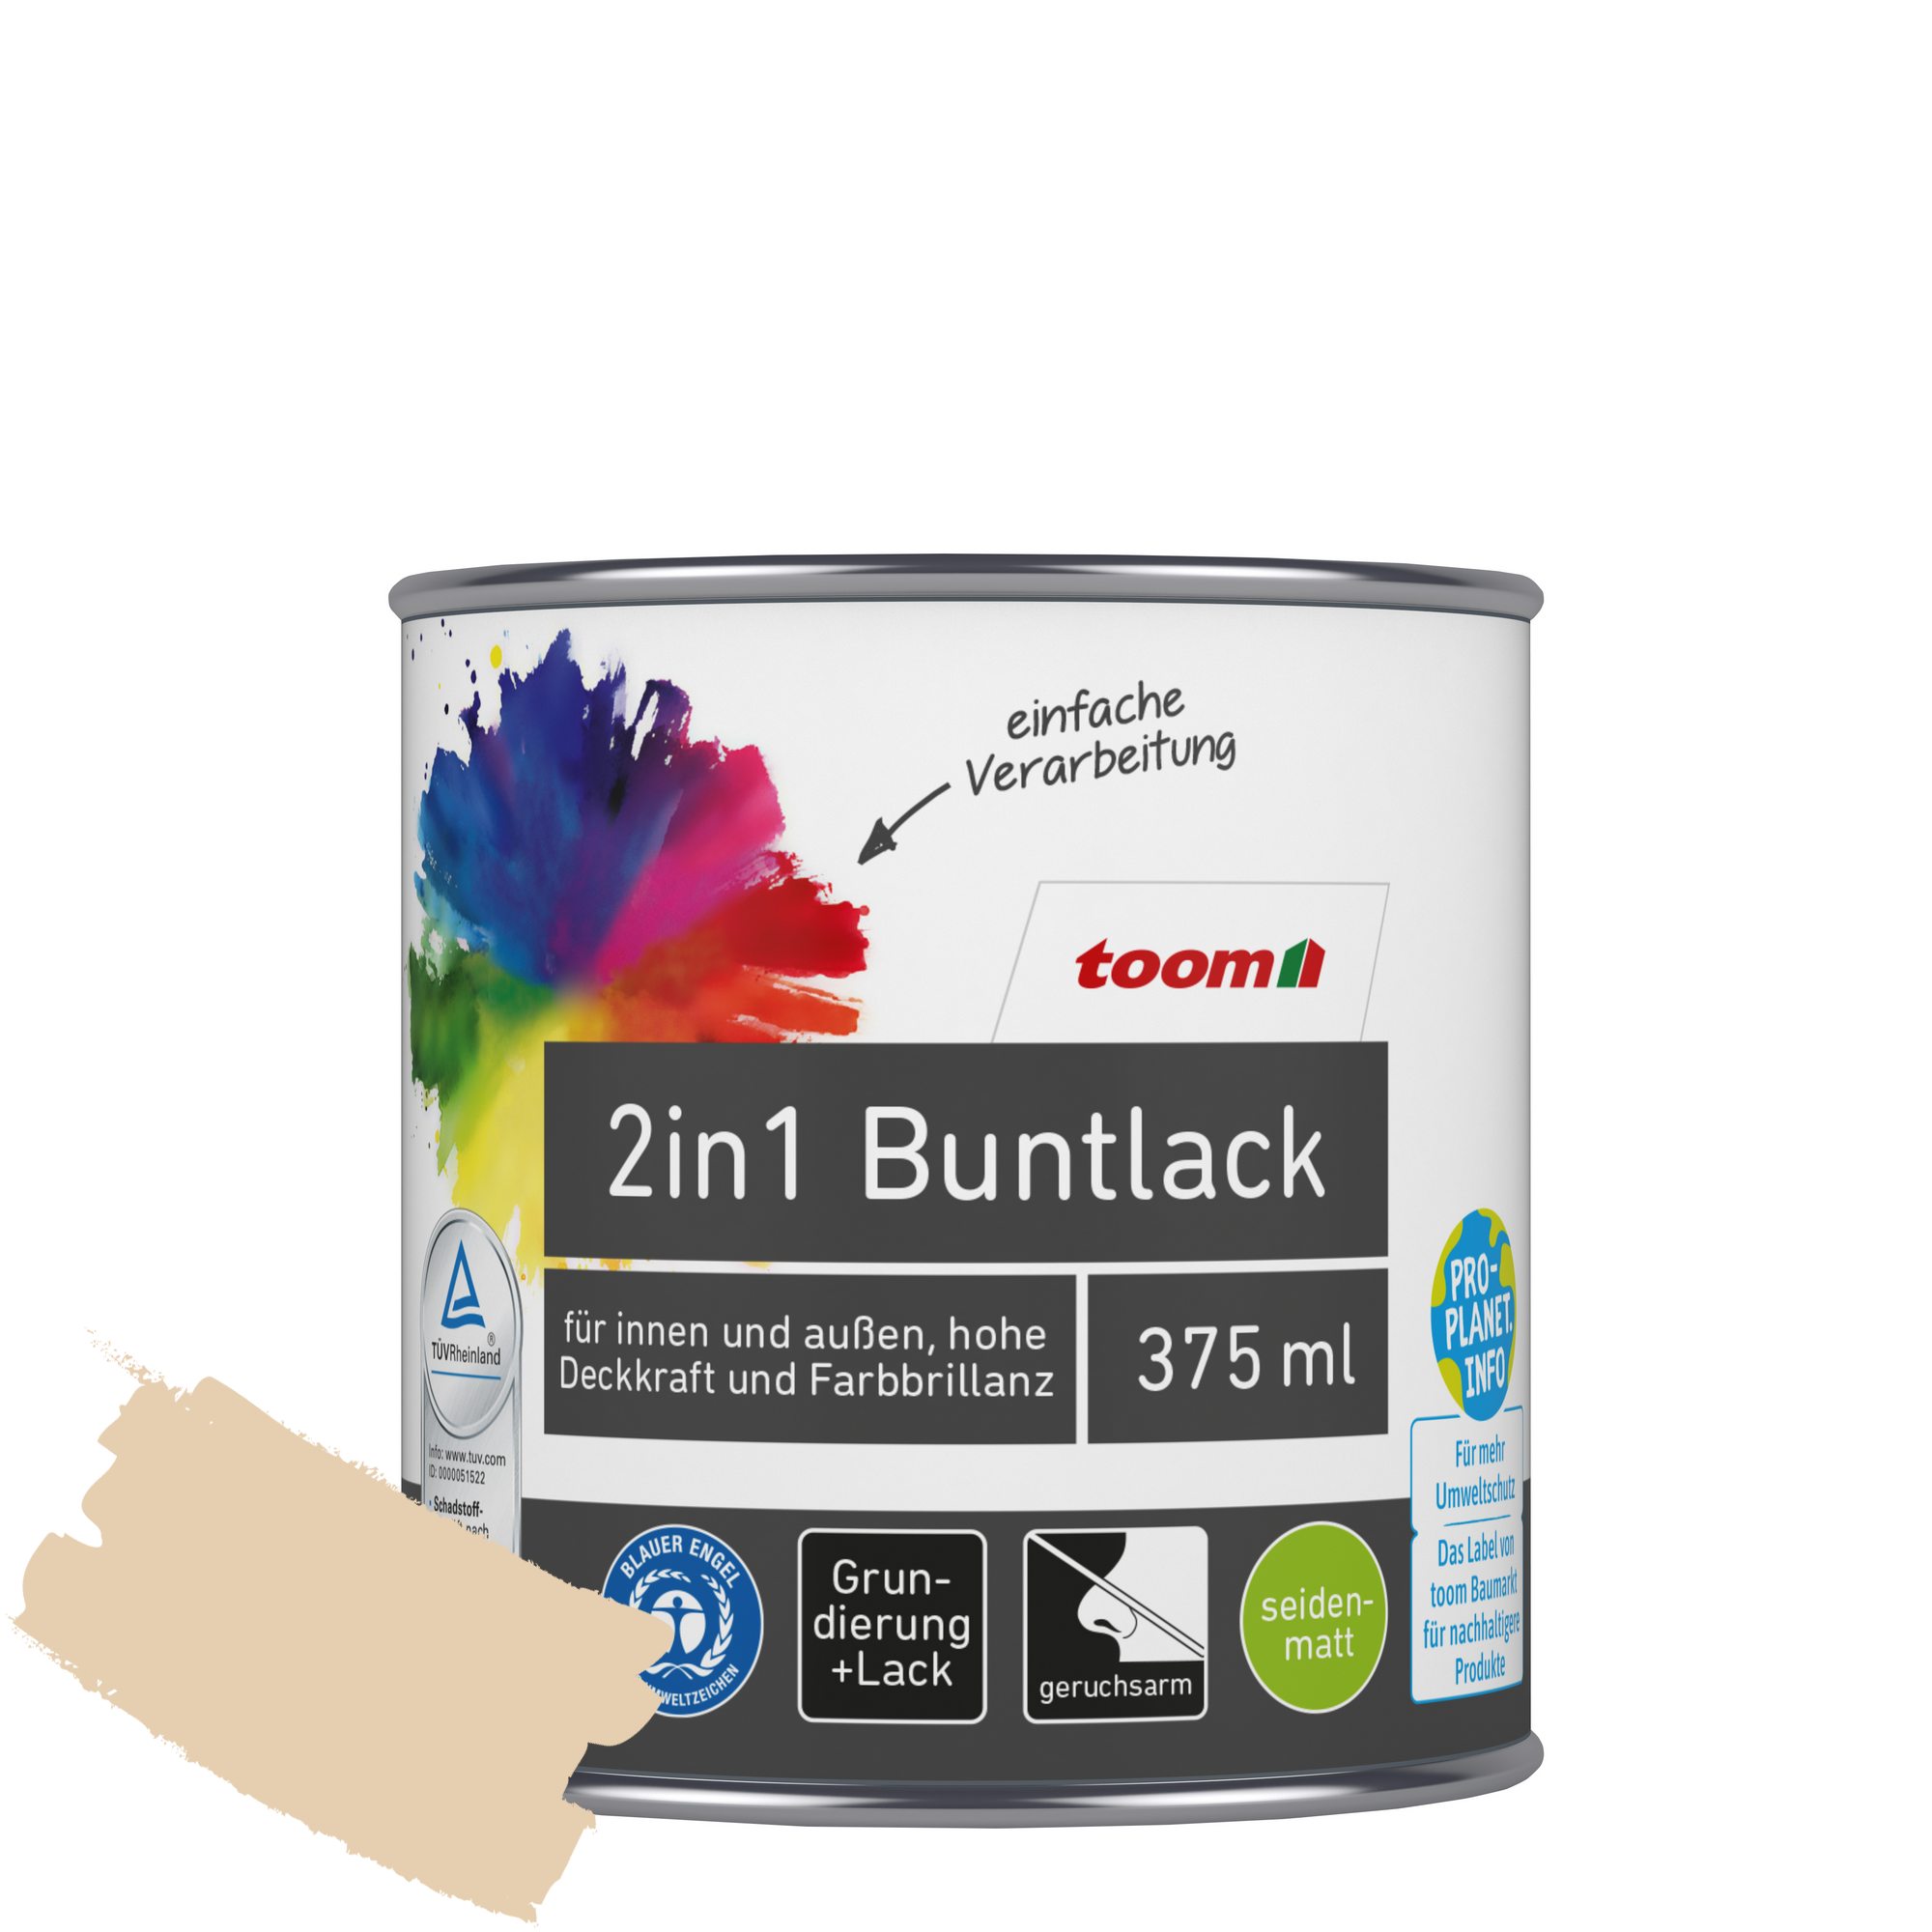 2in1 Buntlack 'Sonnenstrahl' hellelfenbein seidenmatt 375 ml + product picture